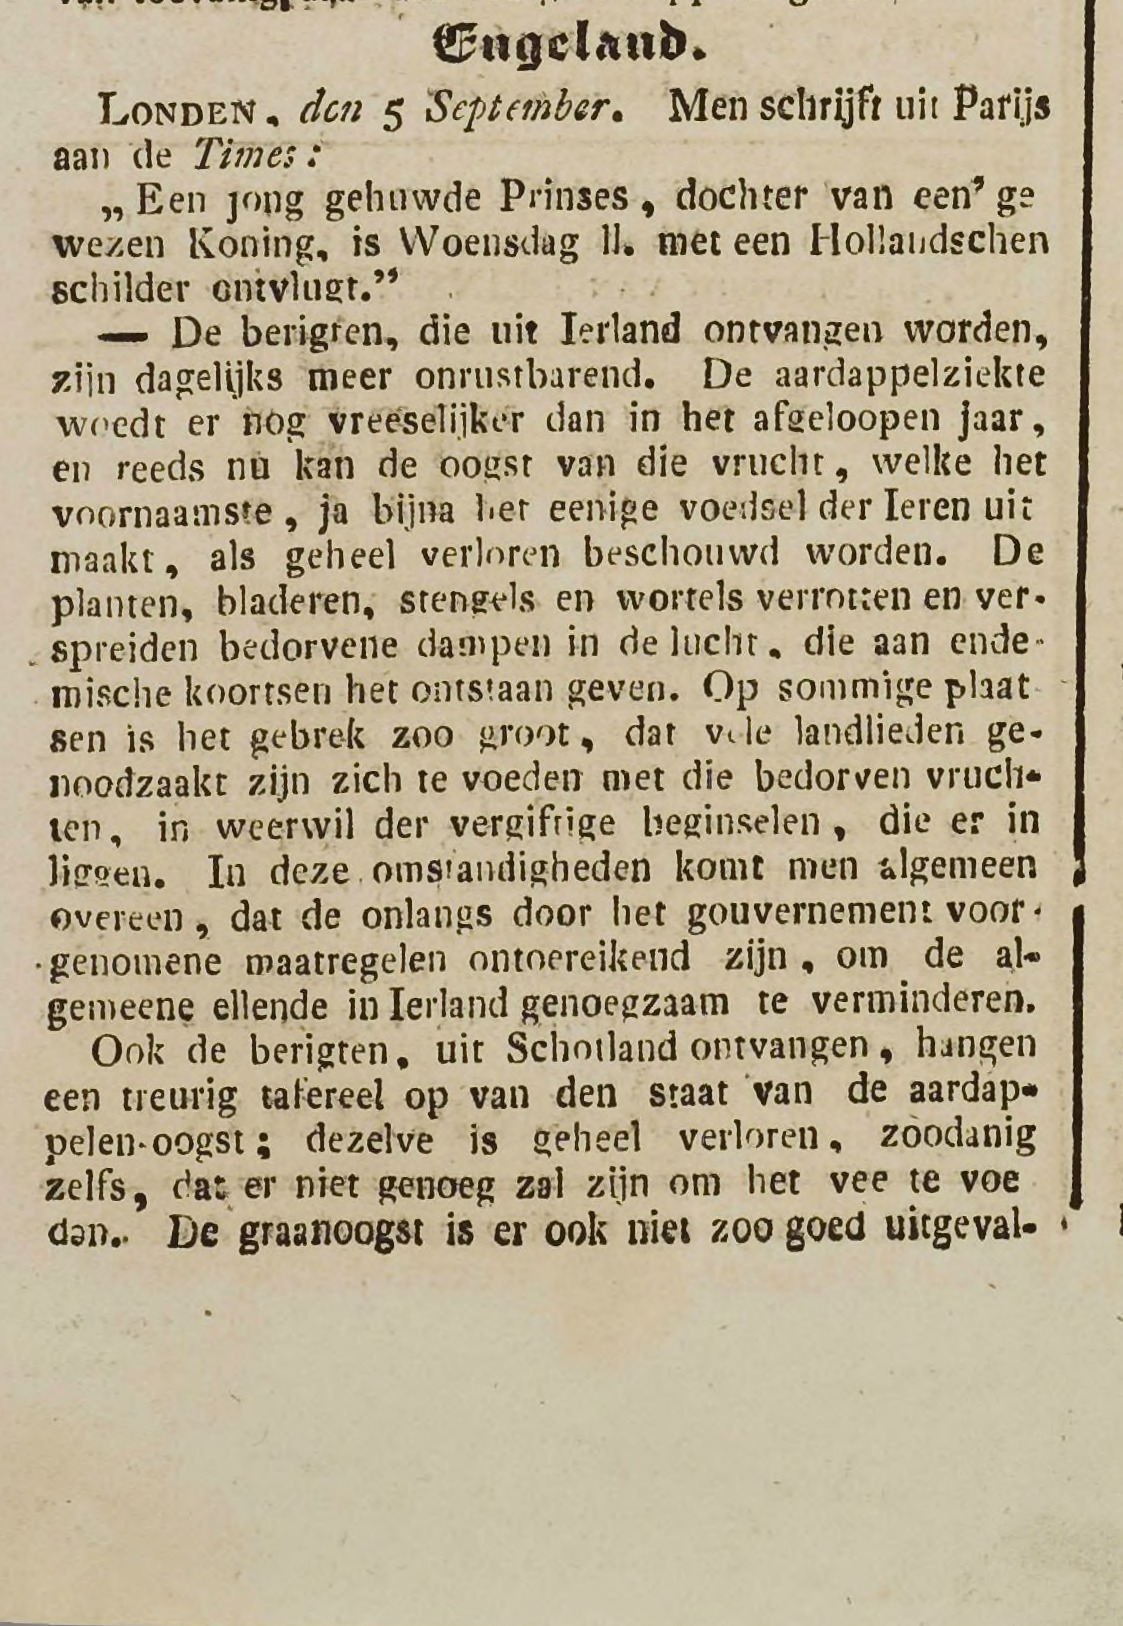 Bericht over de aardappelziekte in Ierland, Goesche Courant 10 september 1846.